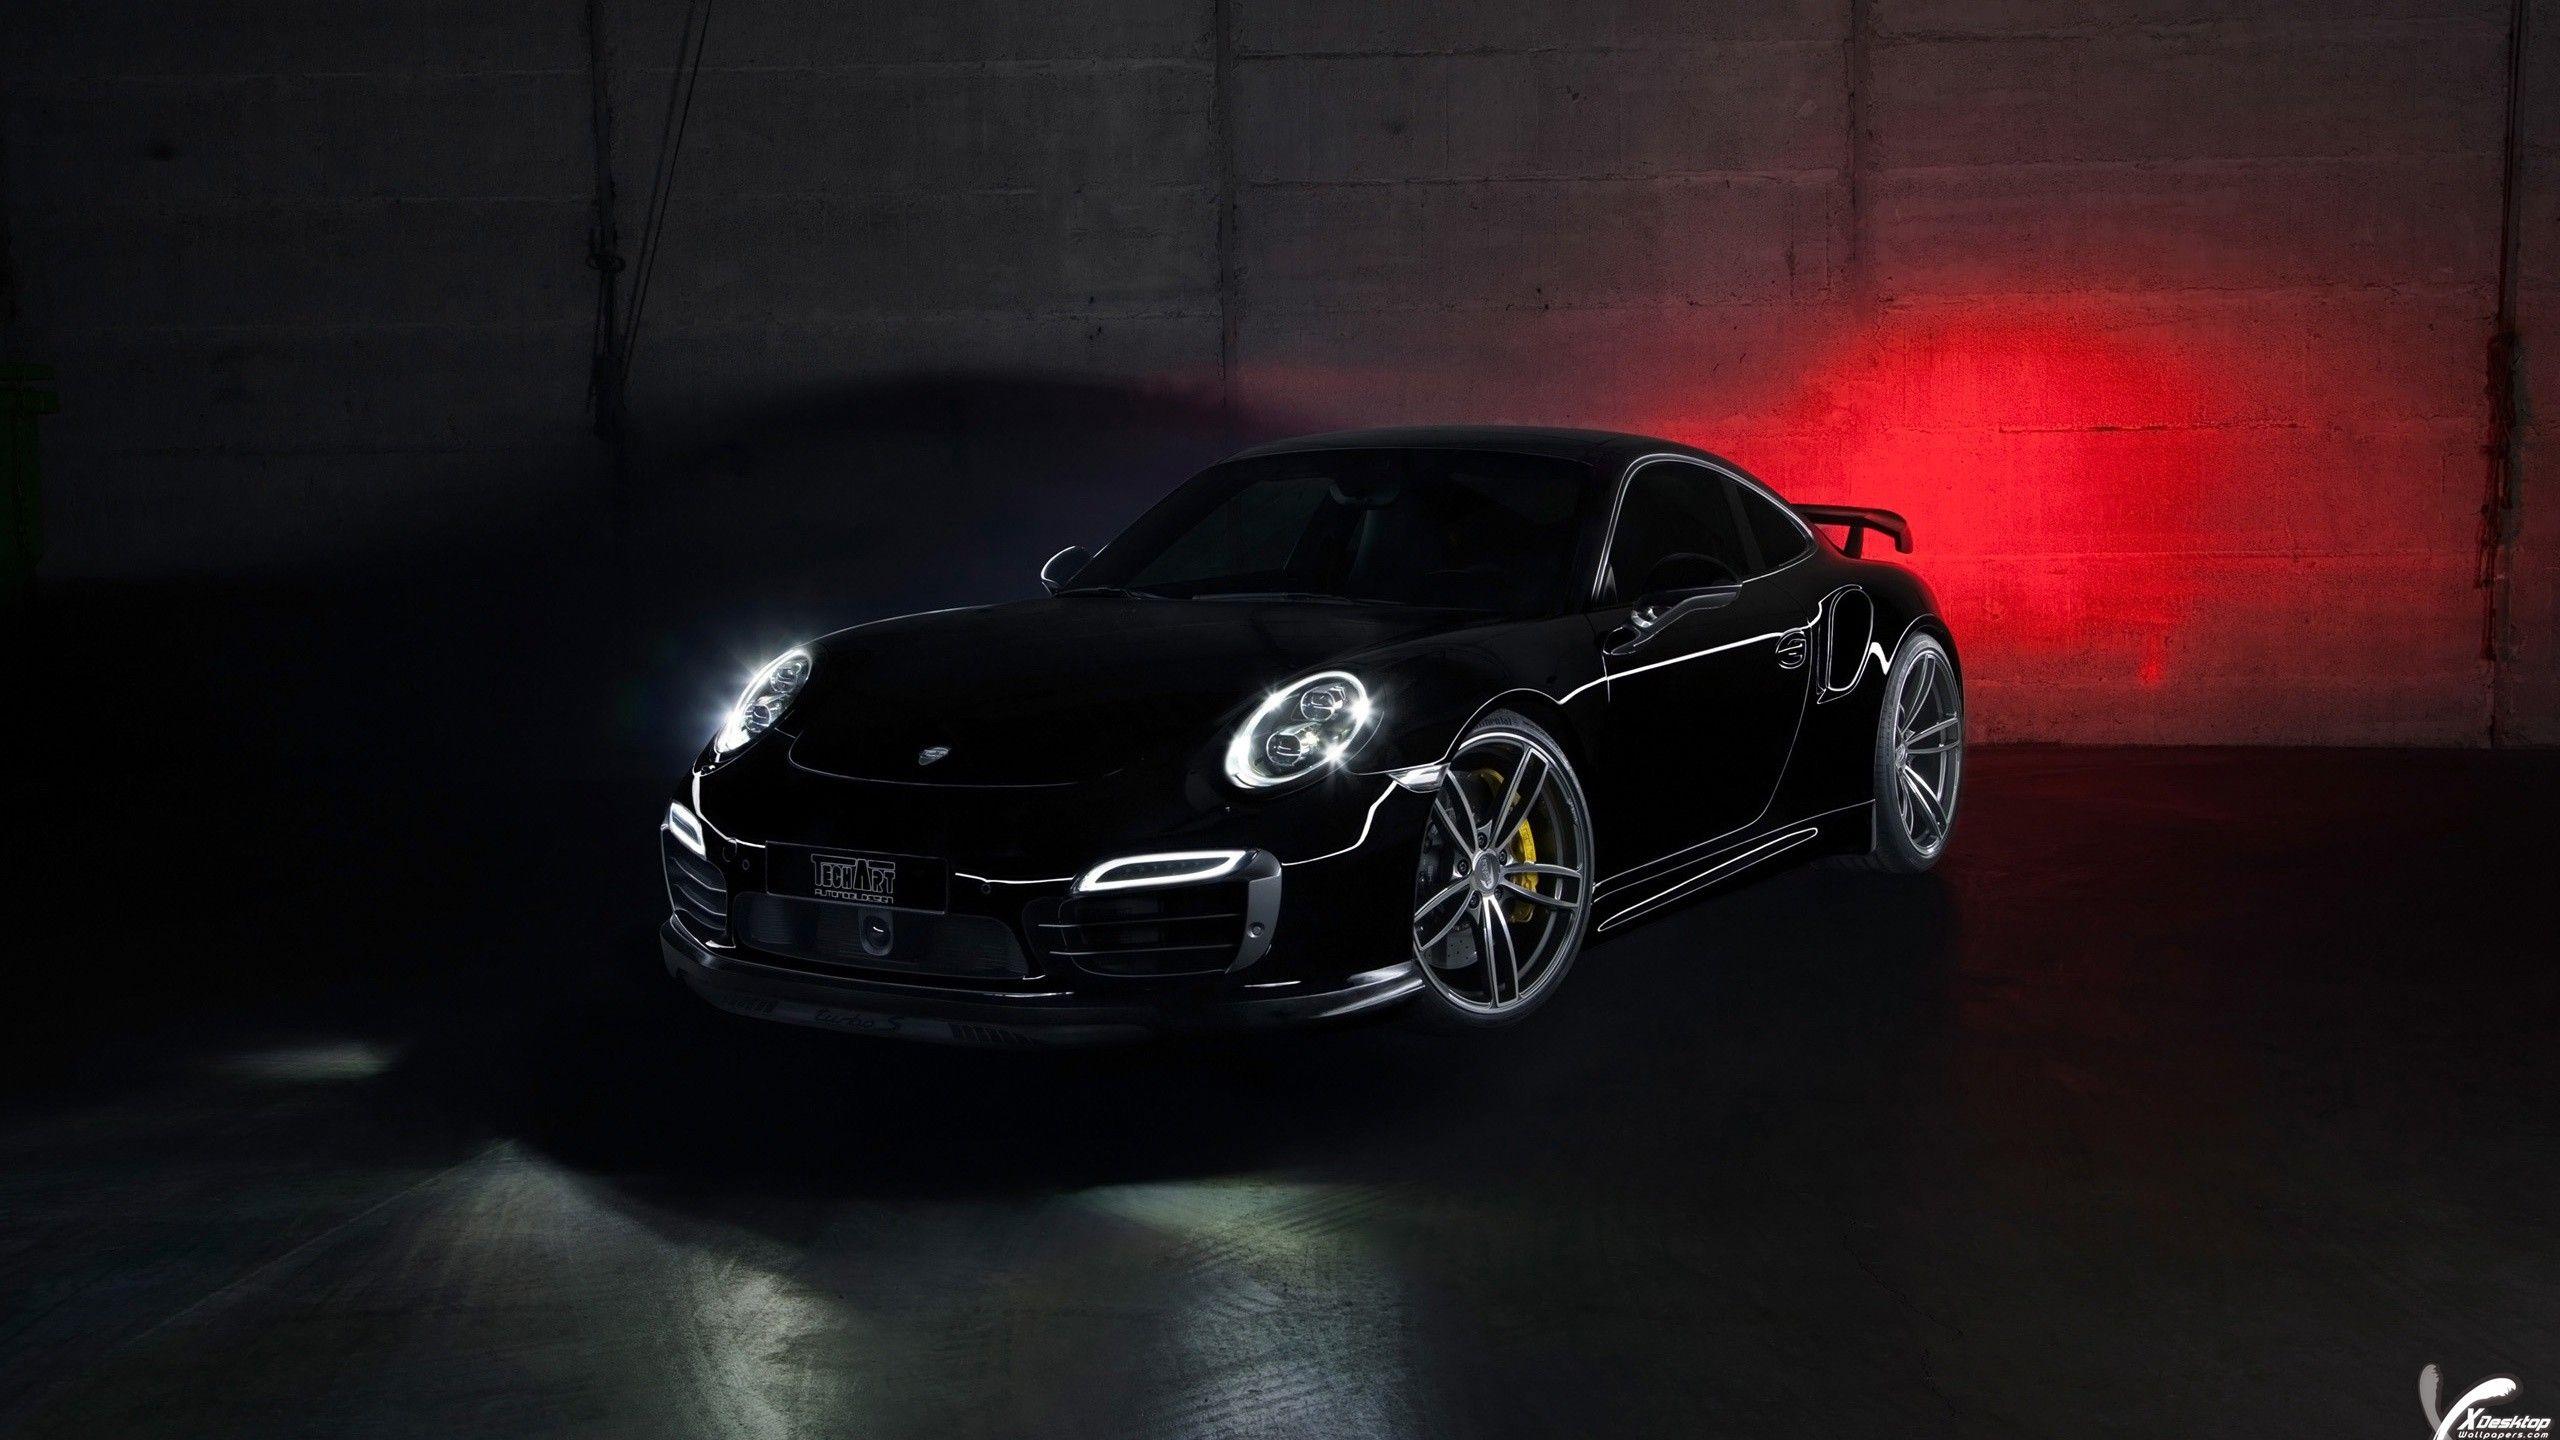 Không có gì đánh dấu sự kiện hơn là chiếc Porsche màu đen huyền thoại, tượng trưng cho sự sang trọng và tinh tế. Với bệ phóng này, bức ảnh hình nền của Porsche màu đen trông thật đẹp mắt và quý phái, đặc biệt là khi được trưng bày trên màn hình máy tính của bạn.